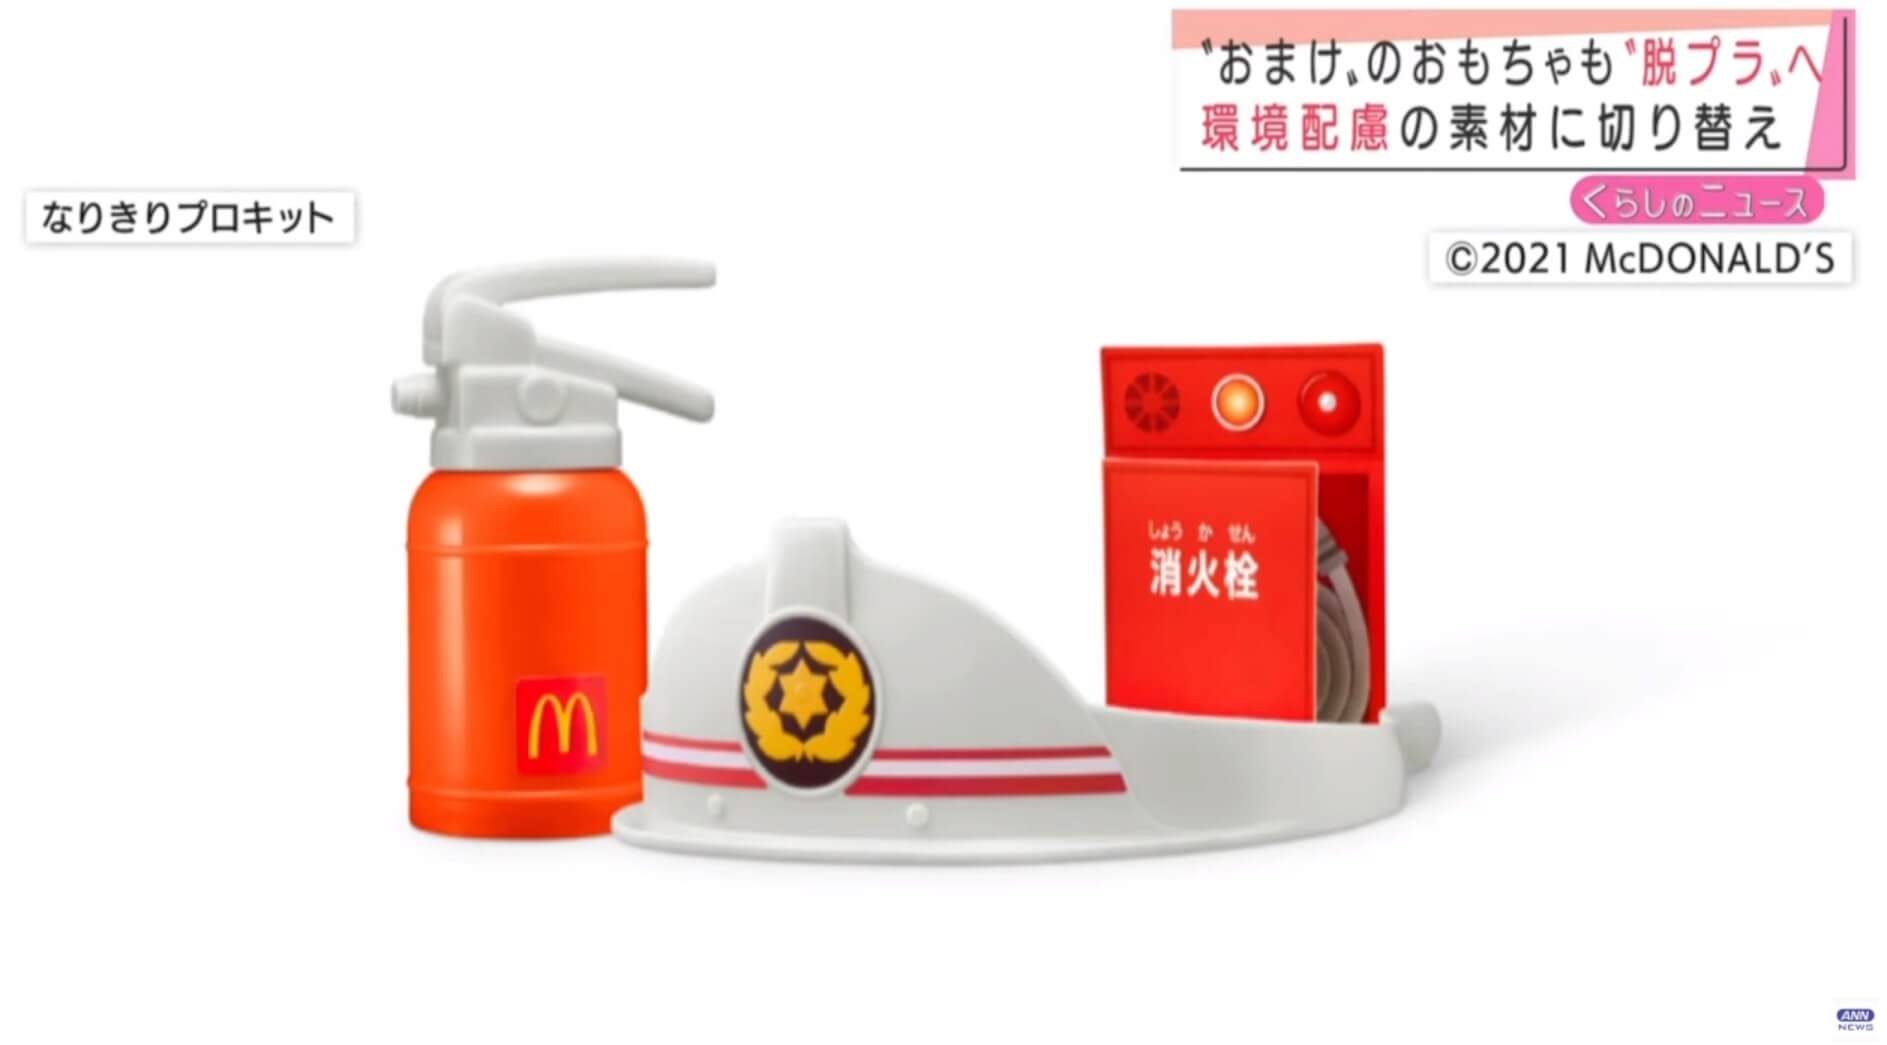 Brinquedos plásticos do Mc Lanche Feliz serão removidos no Japão